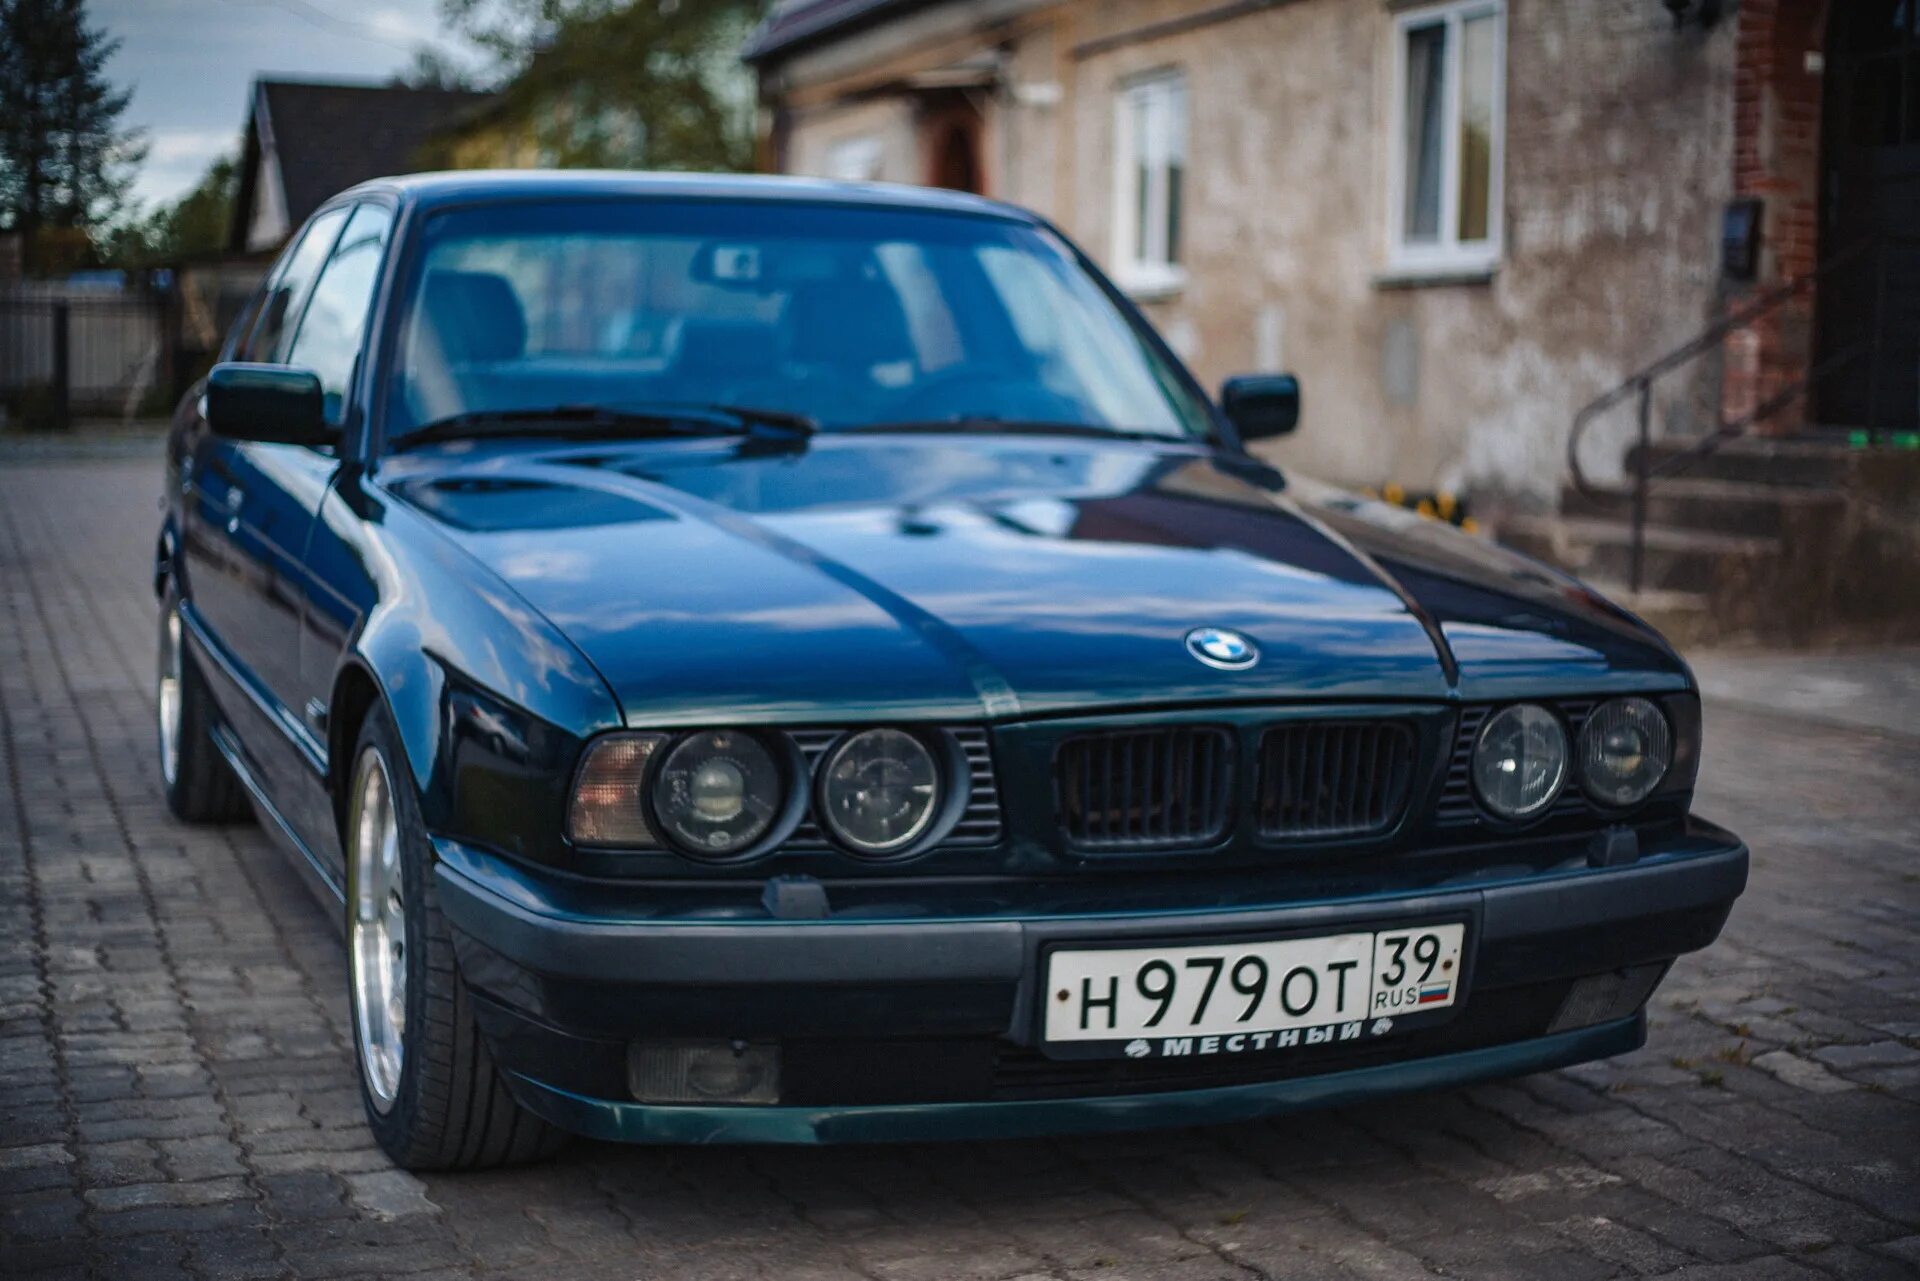 BMW e34 Oxfordgruen Metallic. BMW 5 1994. БМВ 5 1994. БМВ 5 е34 Ставрополь голубая. Е34 дизель